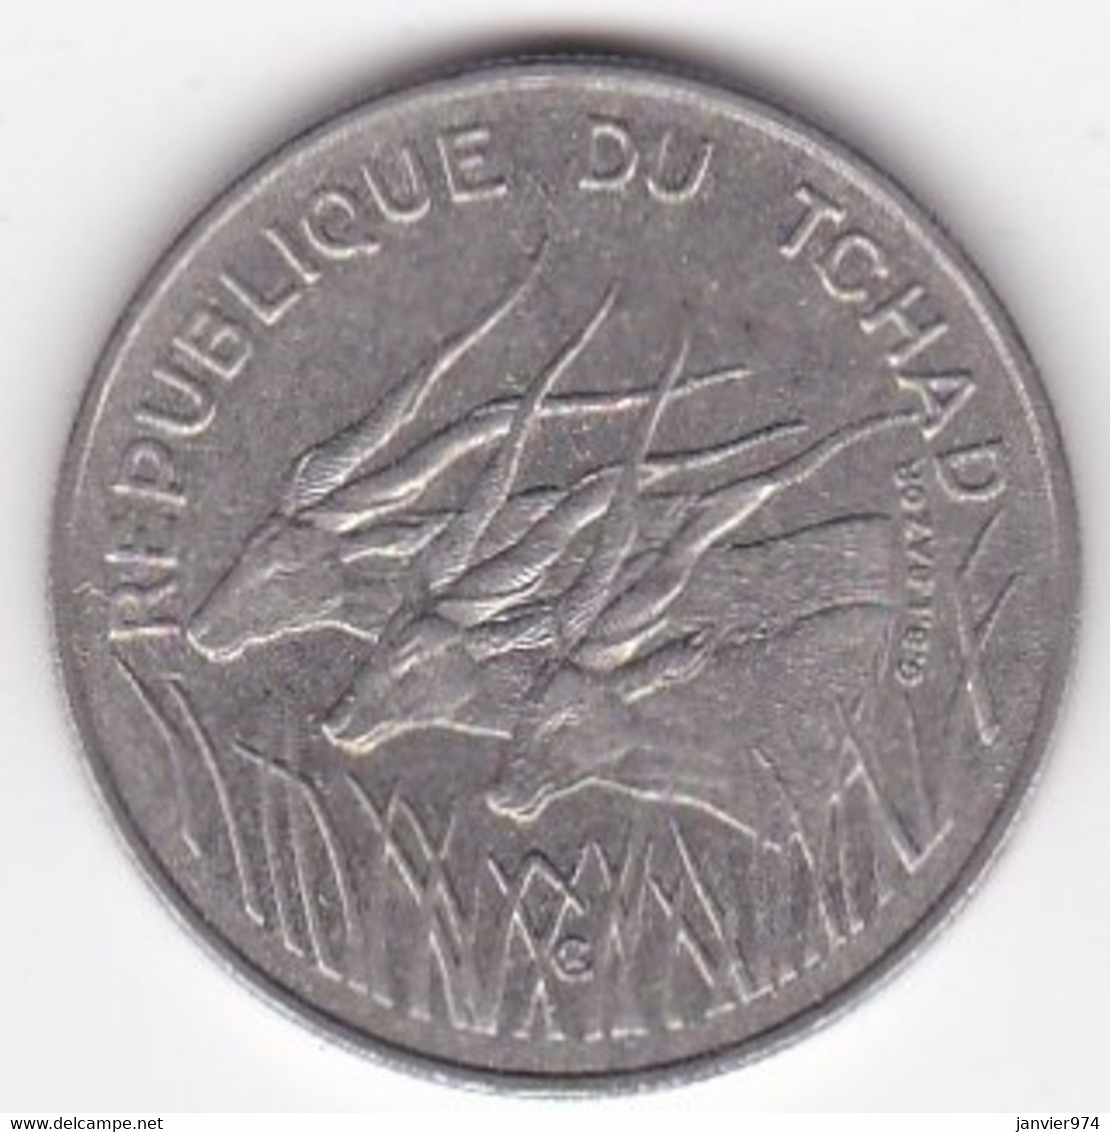 République Du Tchad 100 Francs 1990, Cupro Nickel , KM# 3 - Chad